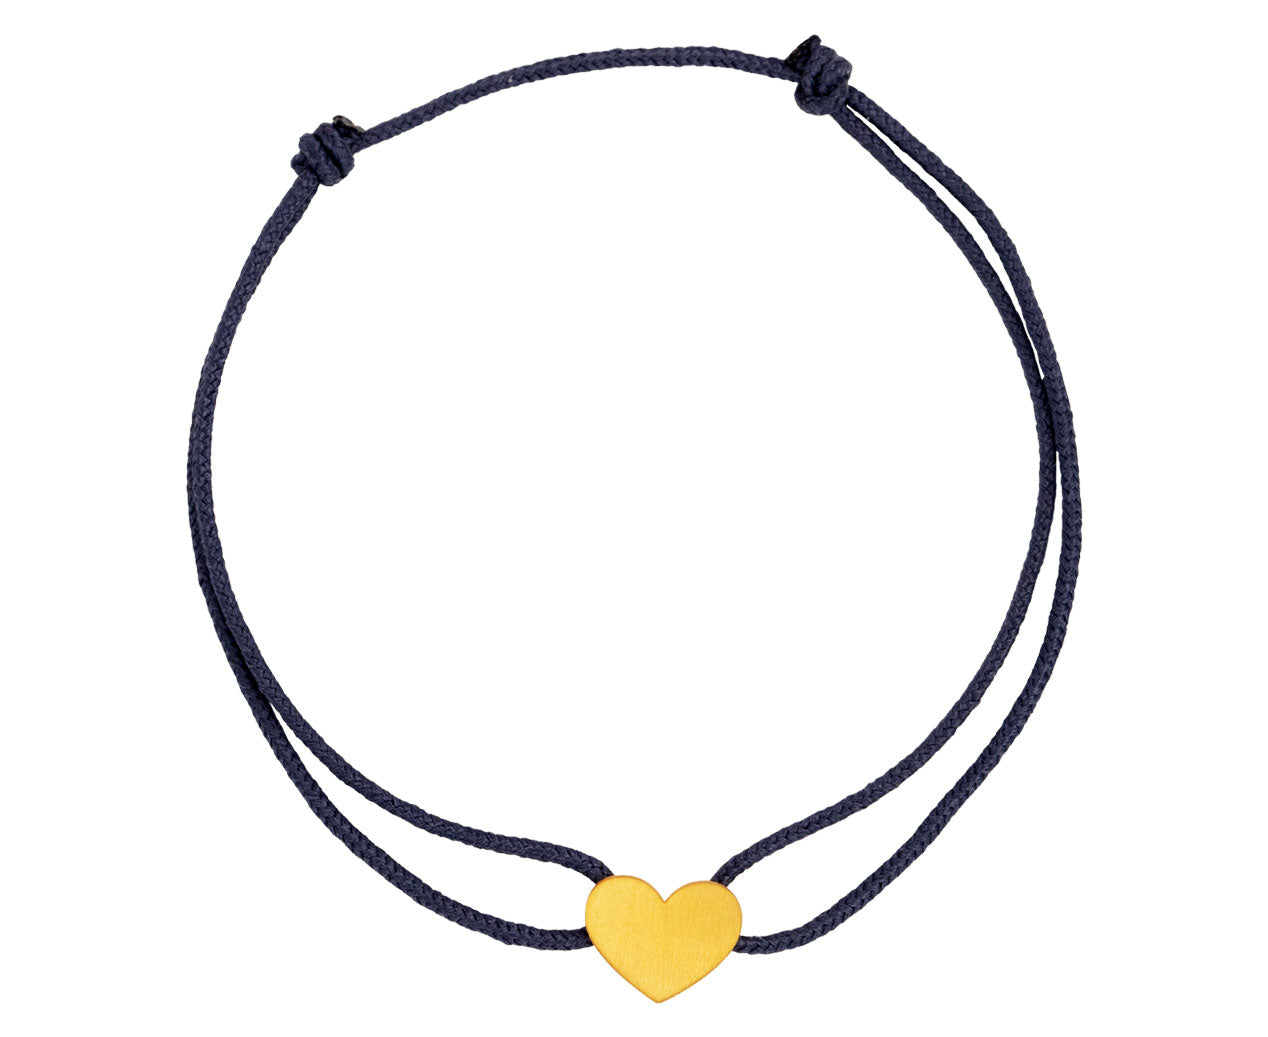 Enamel Heart Cord Bracelet – Marie-Hélène de Taillac - US